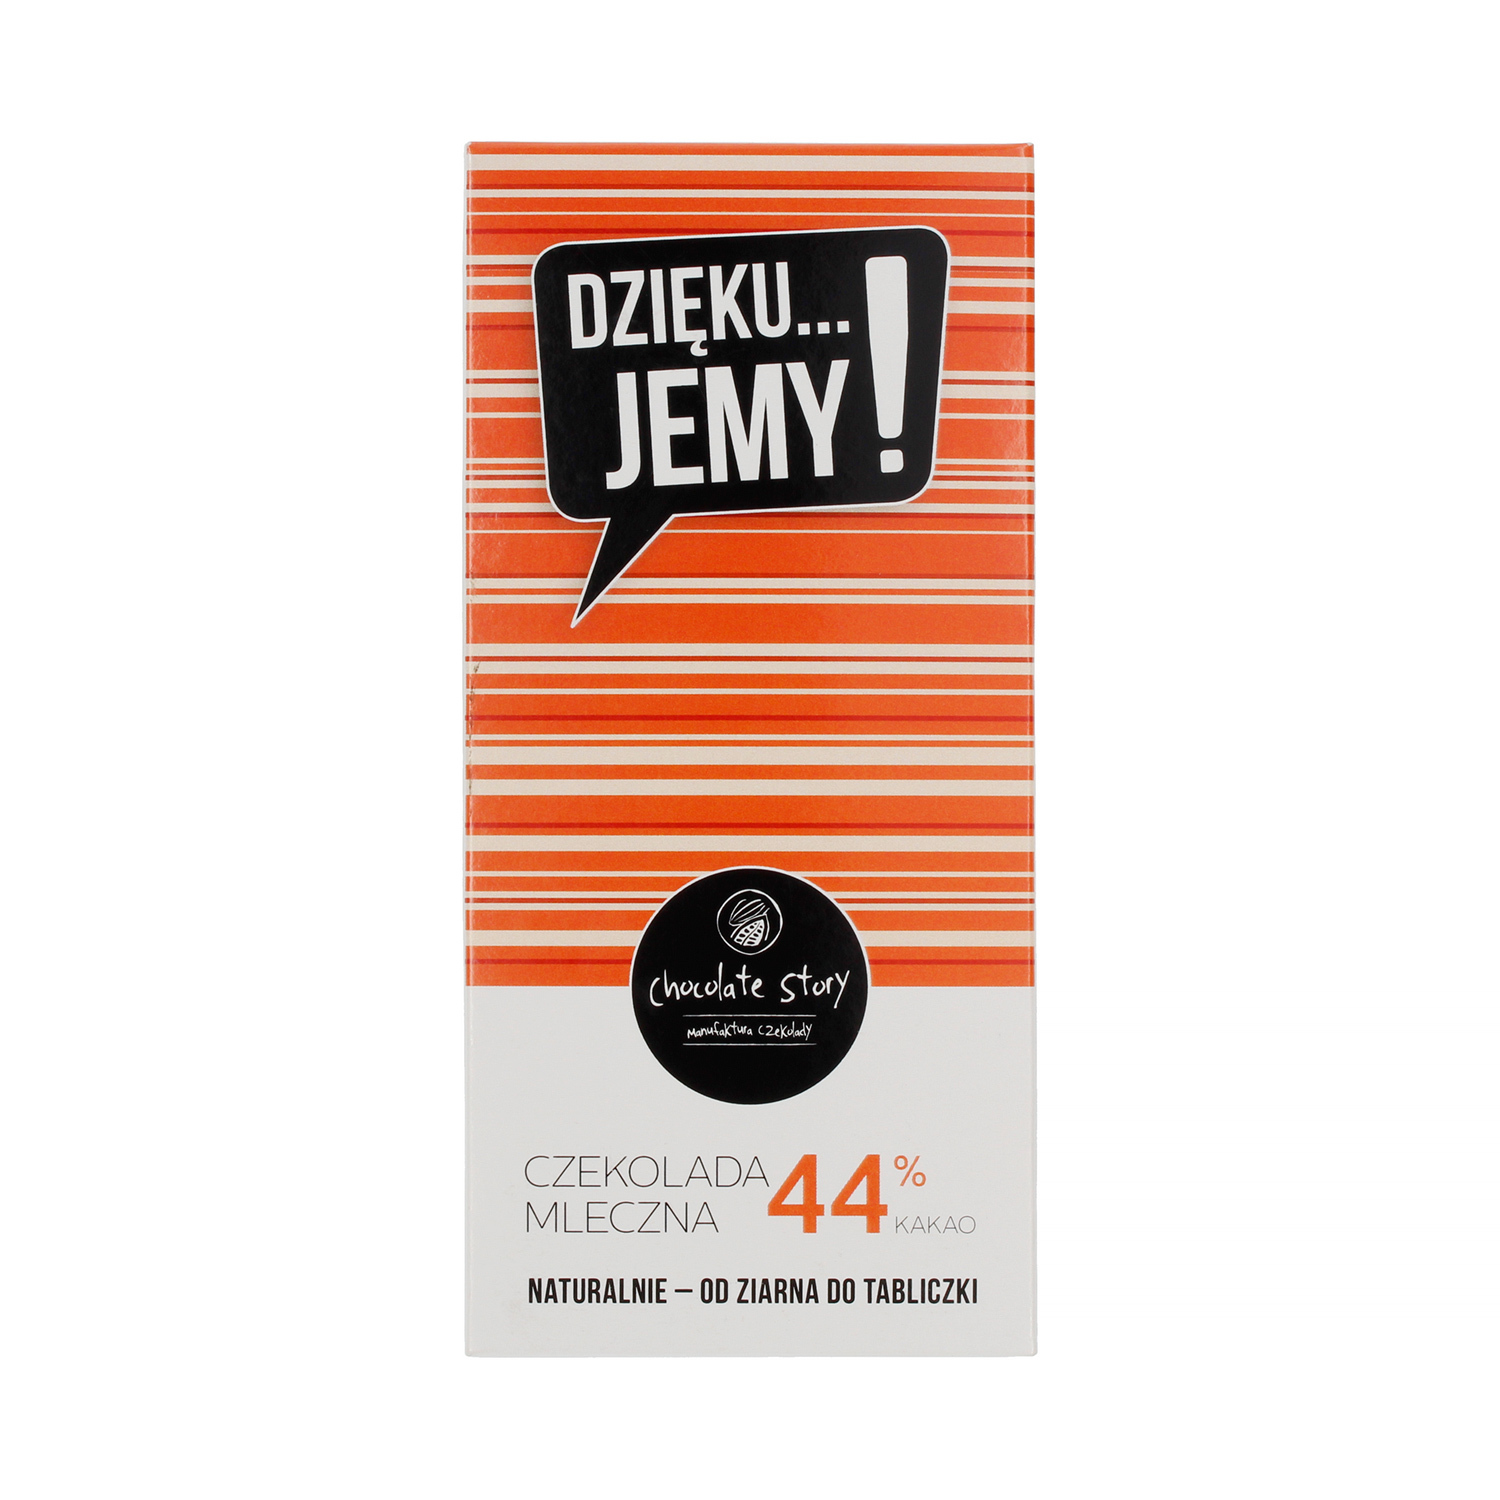 Manufaktura Czekolady - Chocolate 44% DZIĘKU...JEMY!